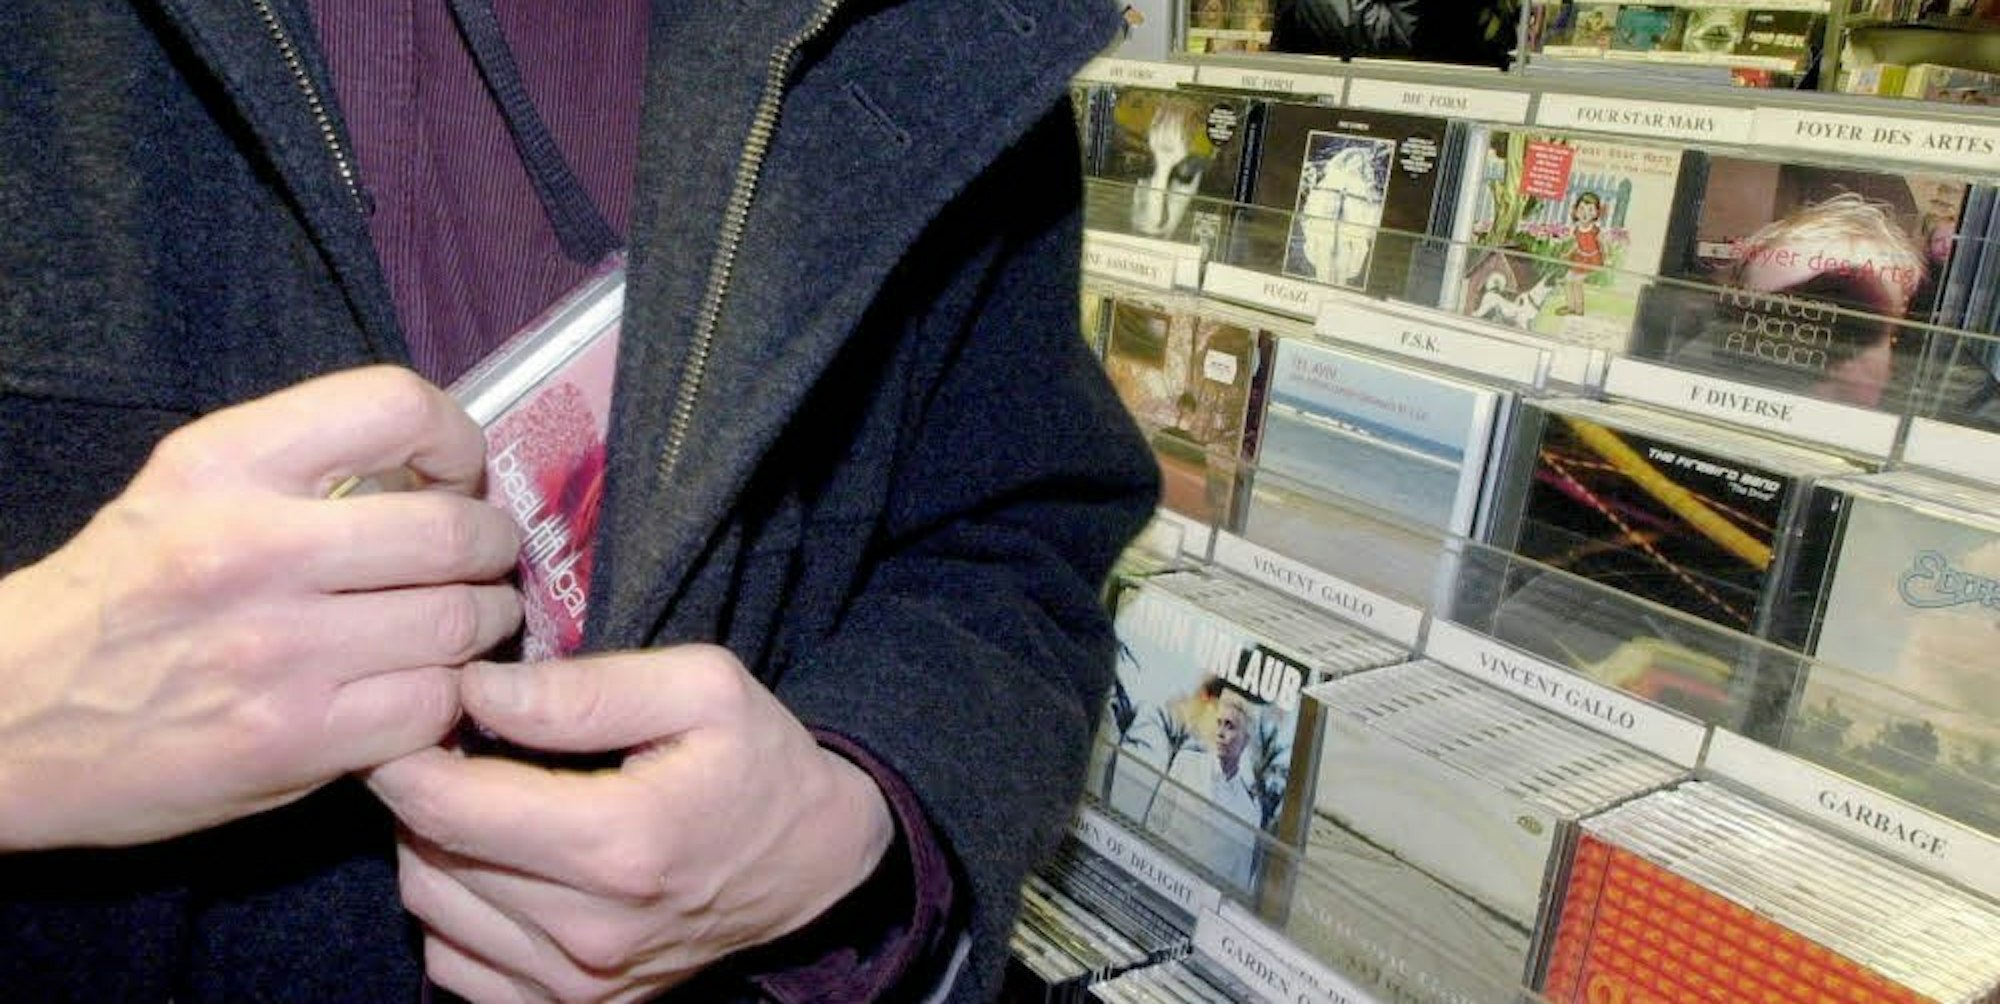 Der Diebstahl geschah im Huma-Einkaufscenter. Anders als auf dem Symbolfoto hatte der Verdächtige eine sogenannte Klautasche dabei. 